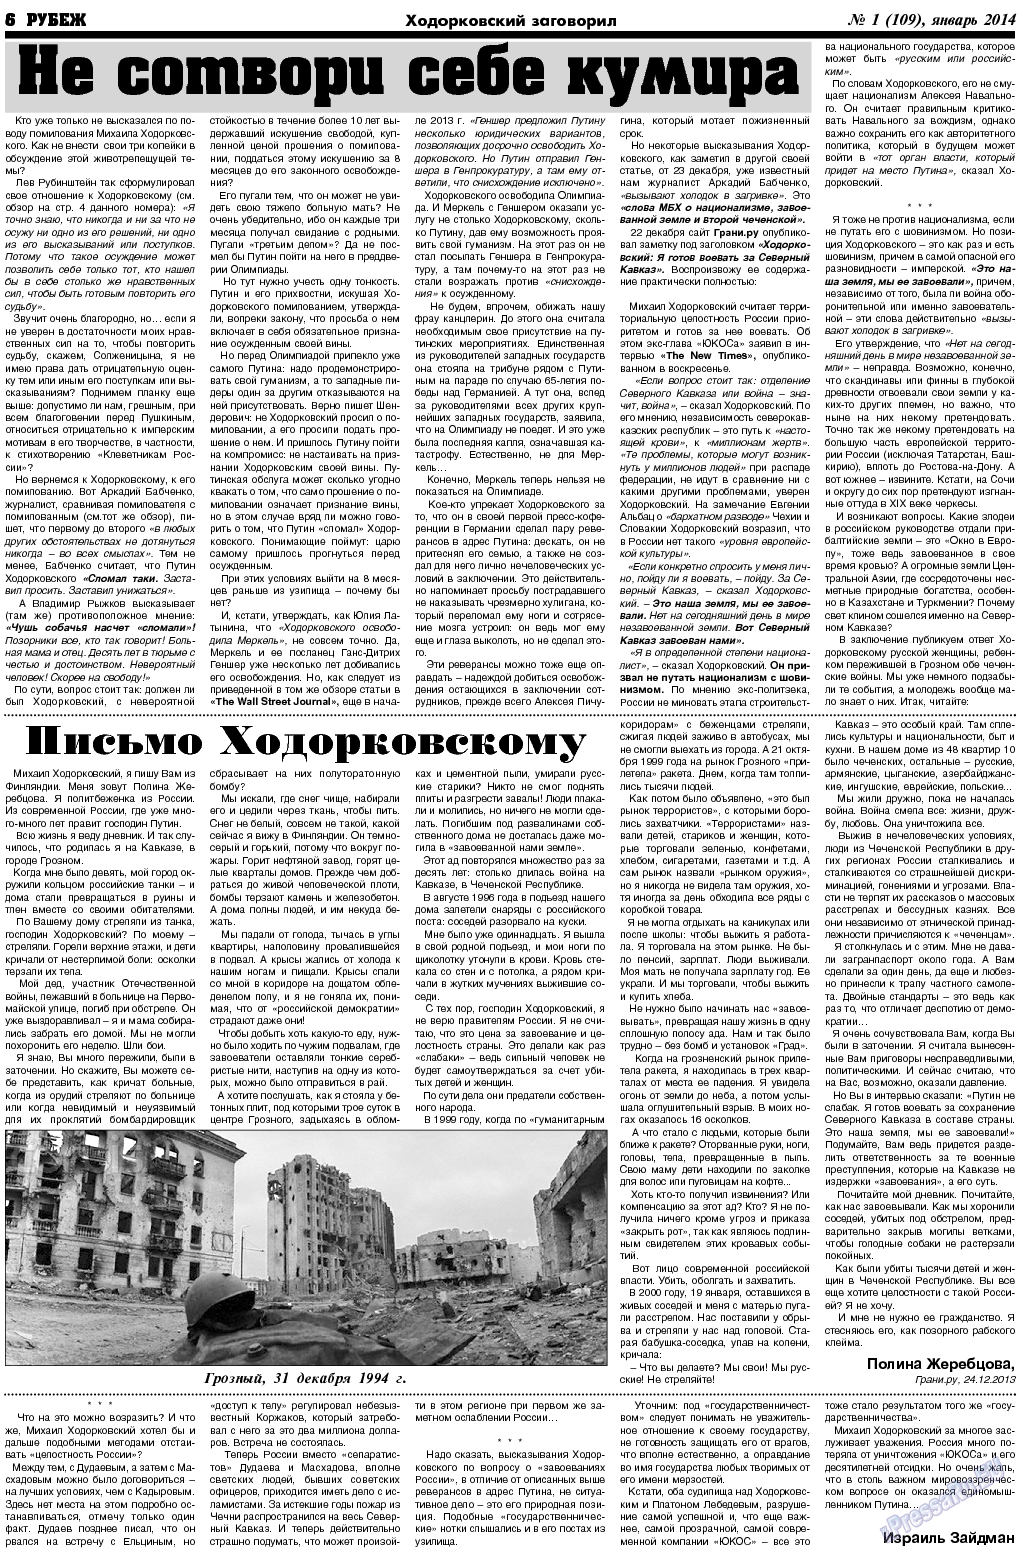 Рубеж (газета). 2014 год, номер 1, стр. 6